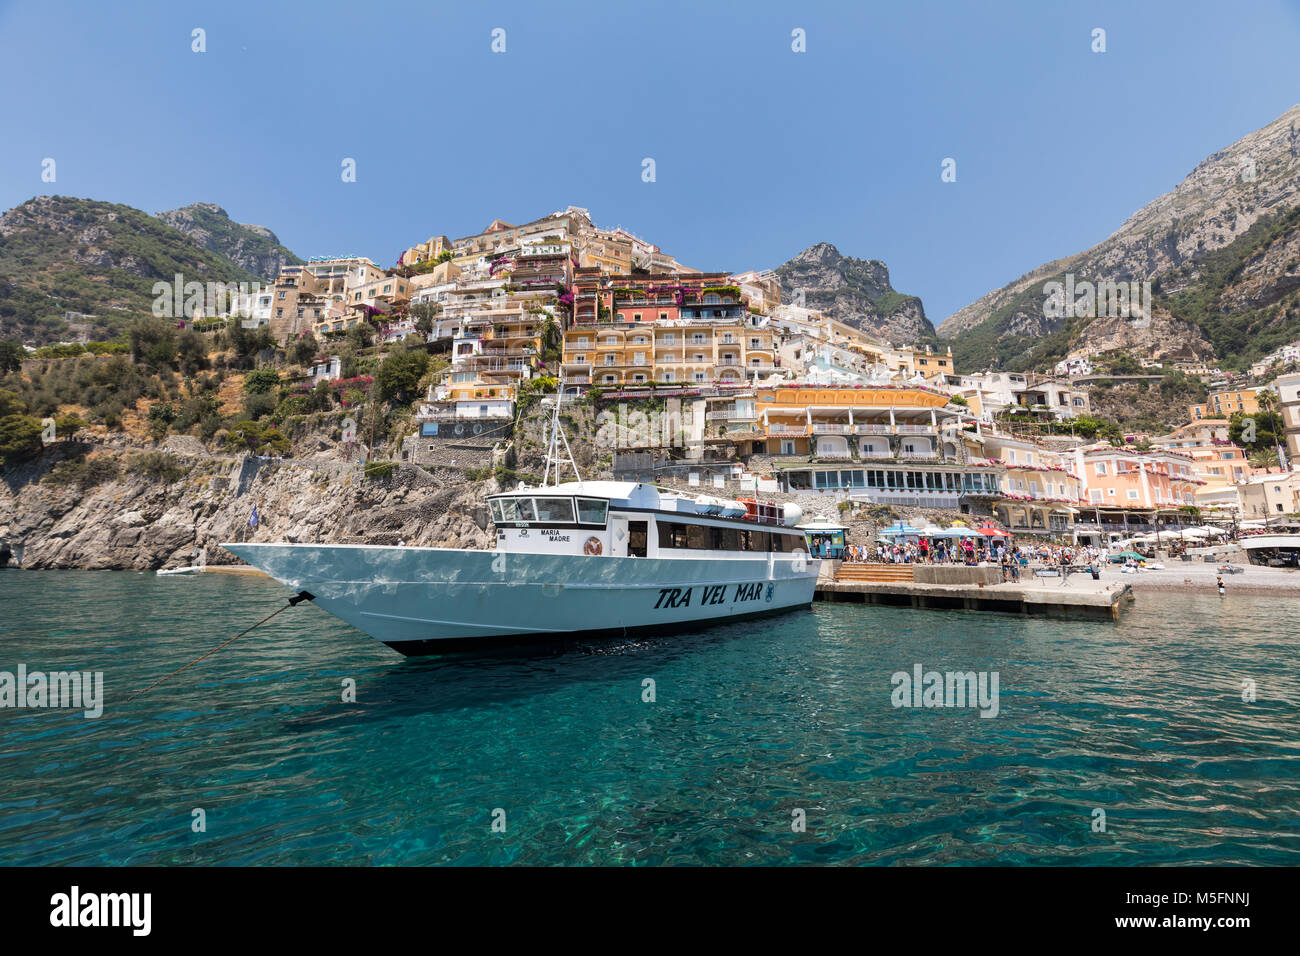 Positano, Italy - June 13, 2017: Positano seen from the sea on Amalfi ...